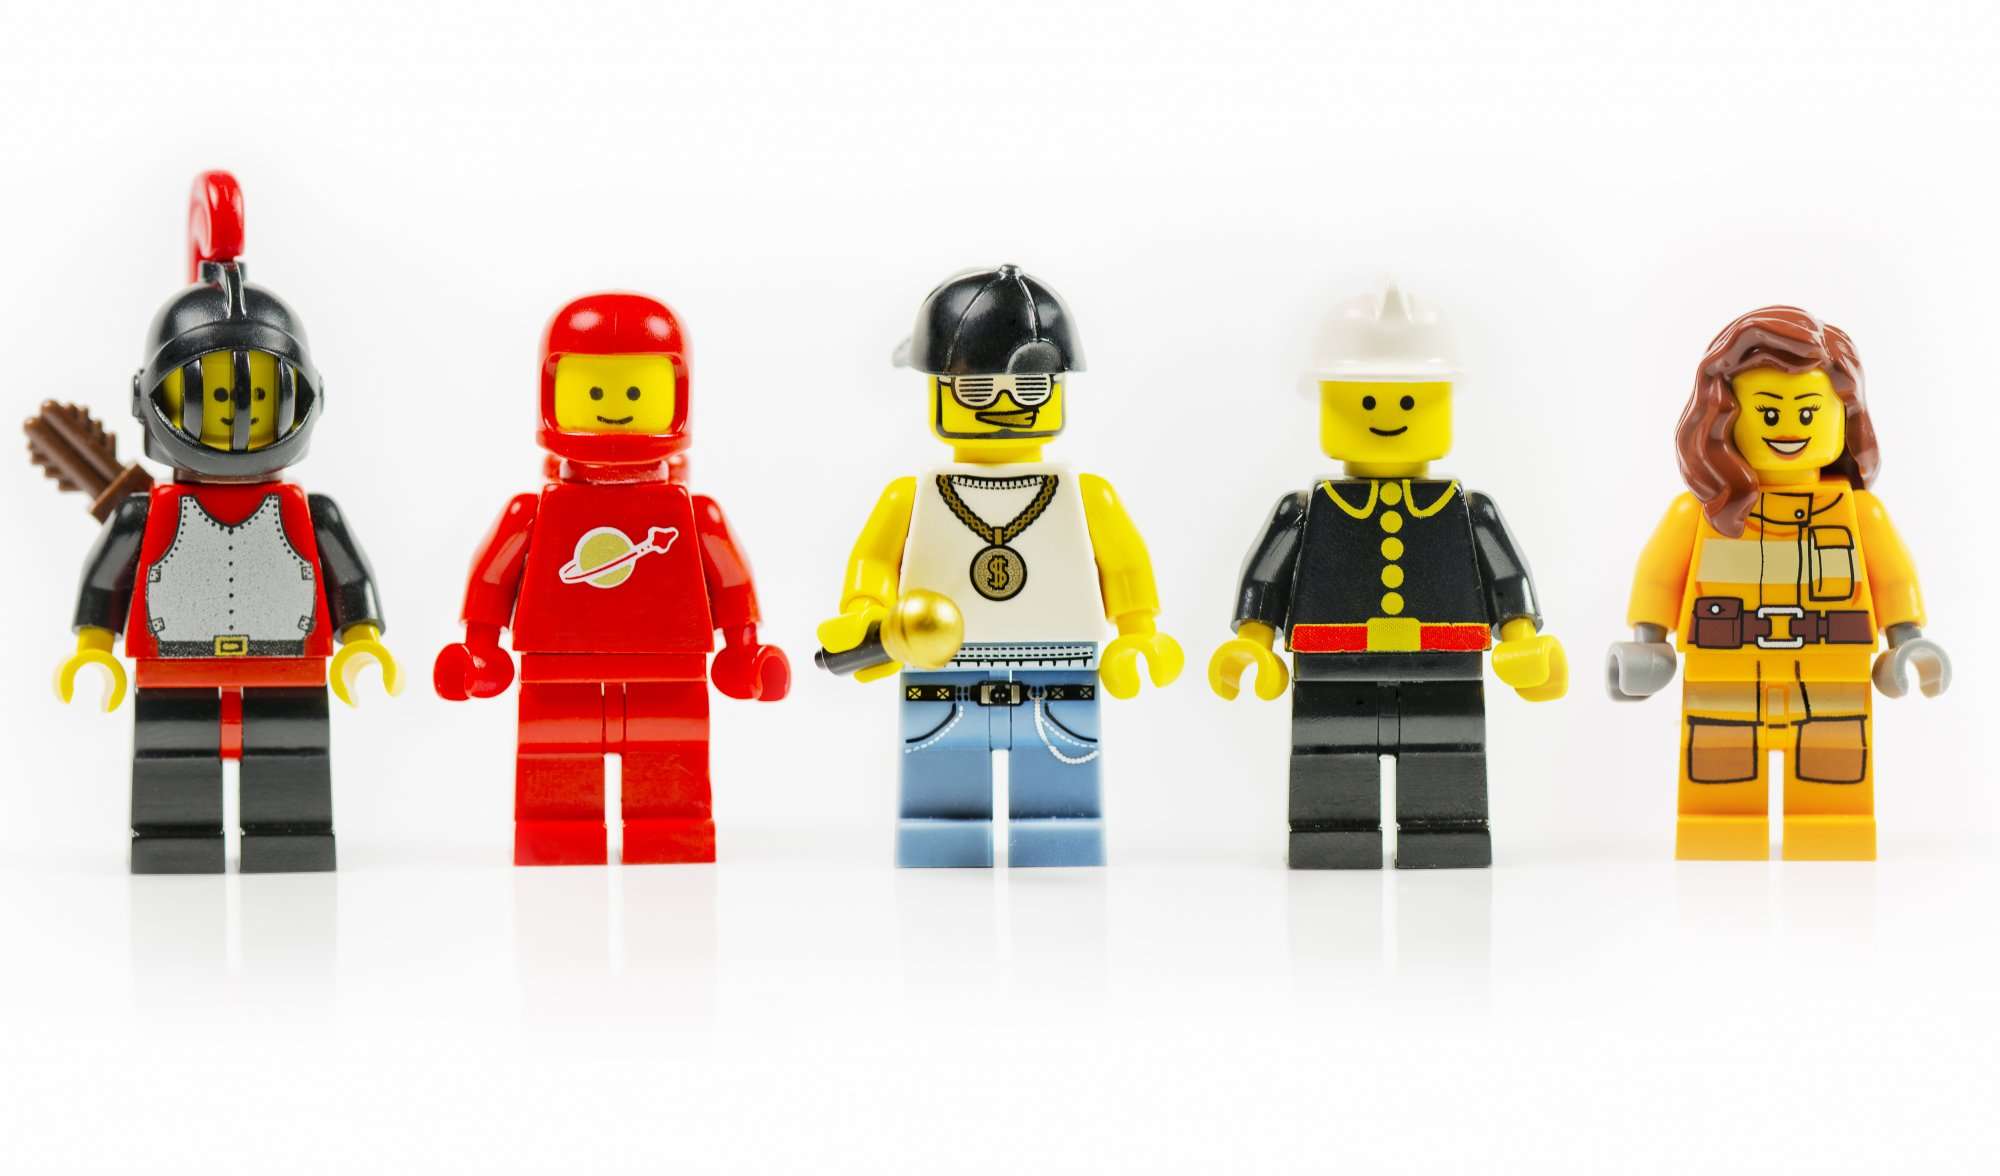 LEGO characters